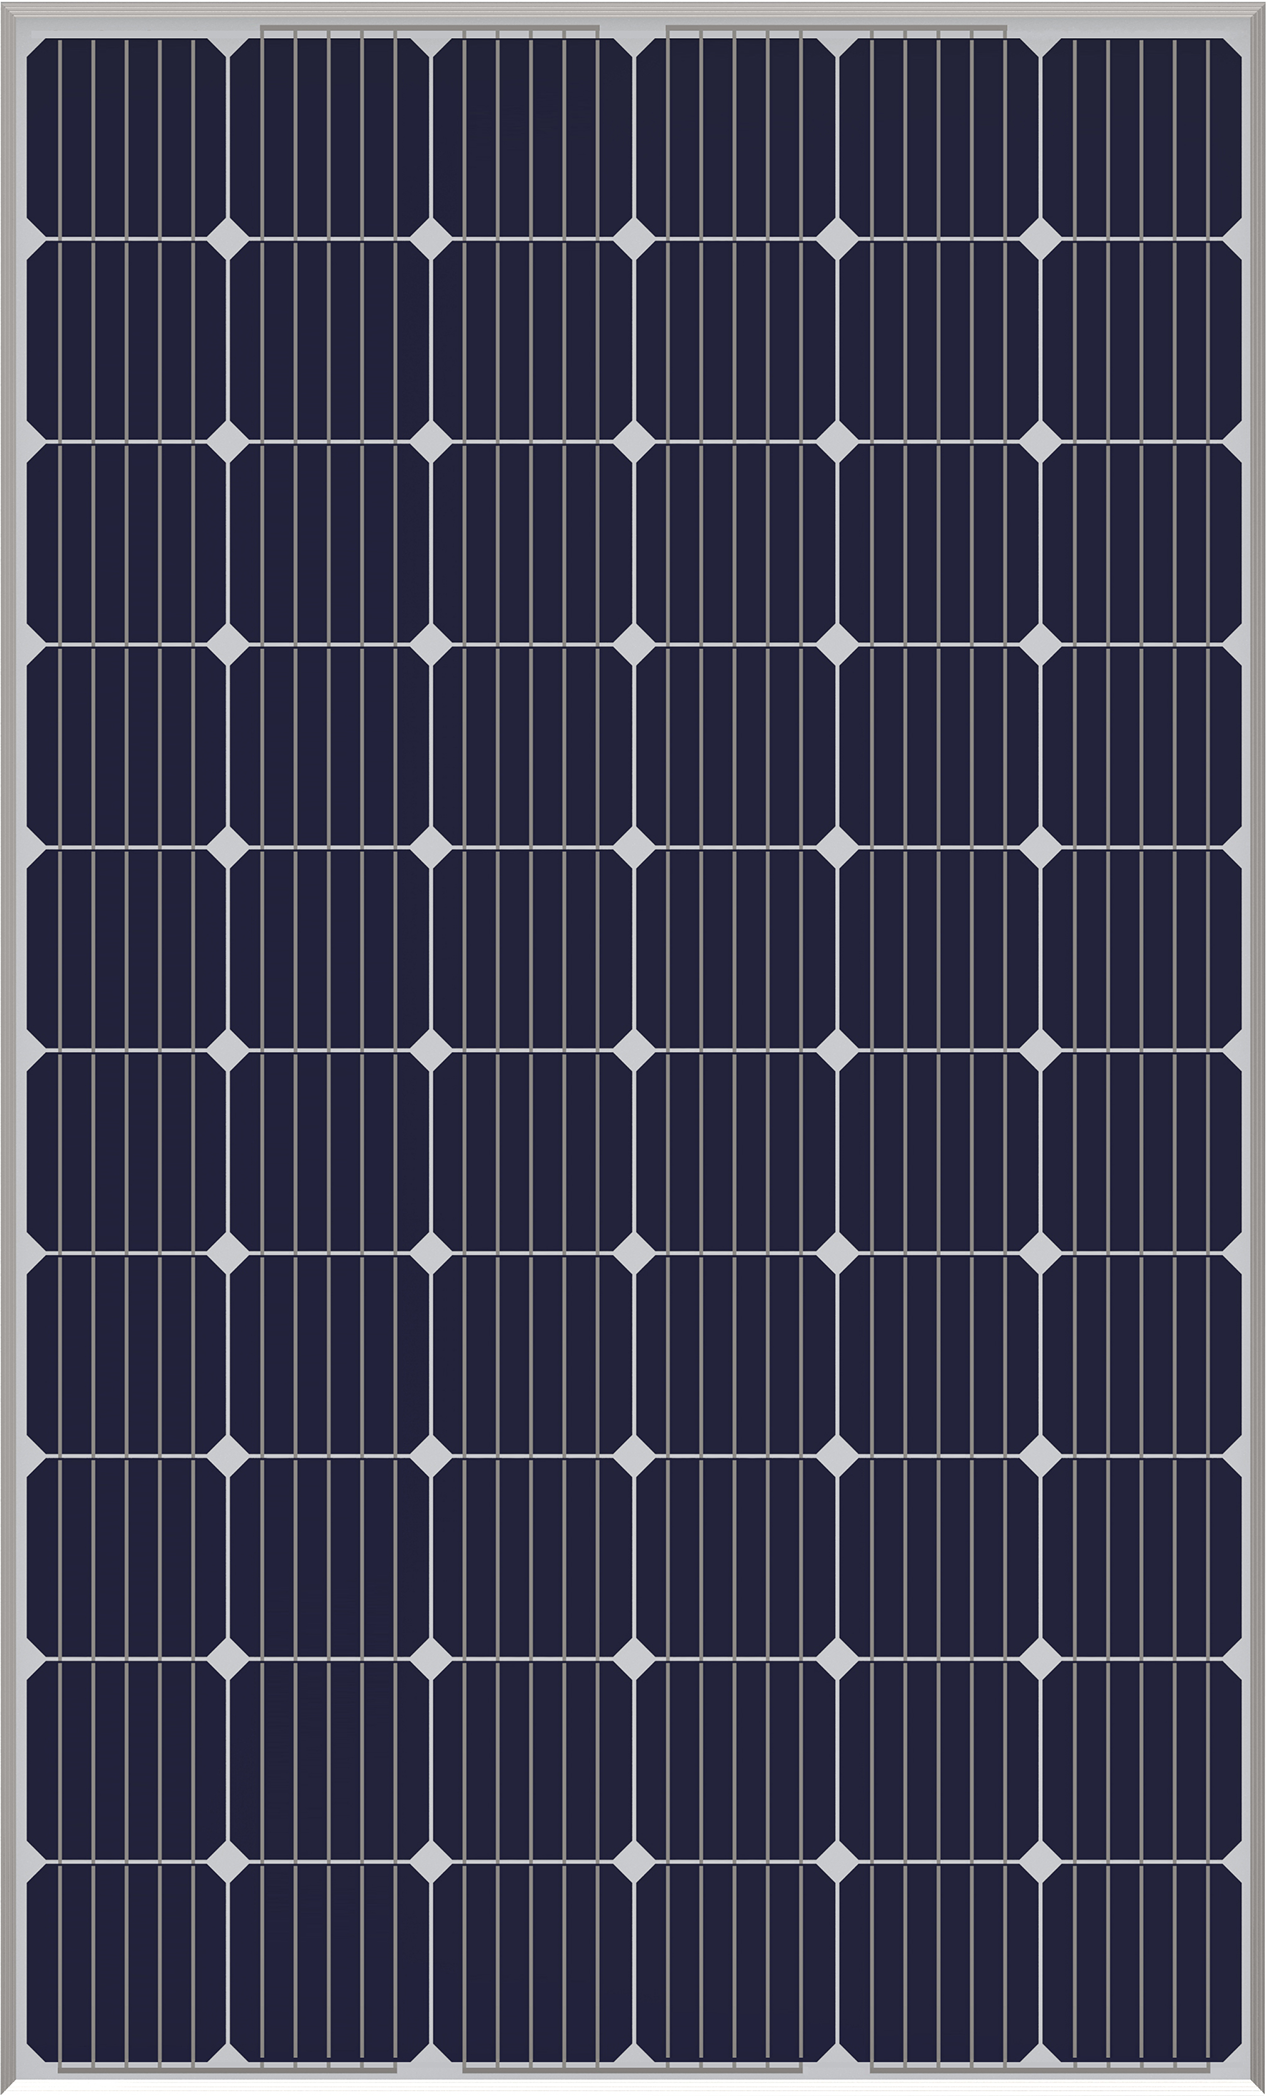 أحادي البلورية لوحة للطاقة الشمسية 300W صورة مميزة